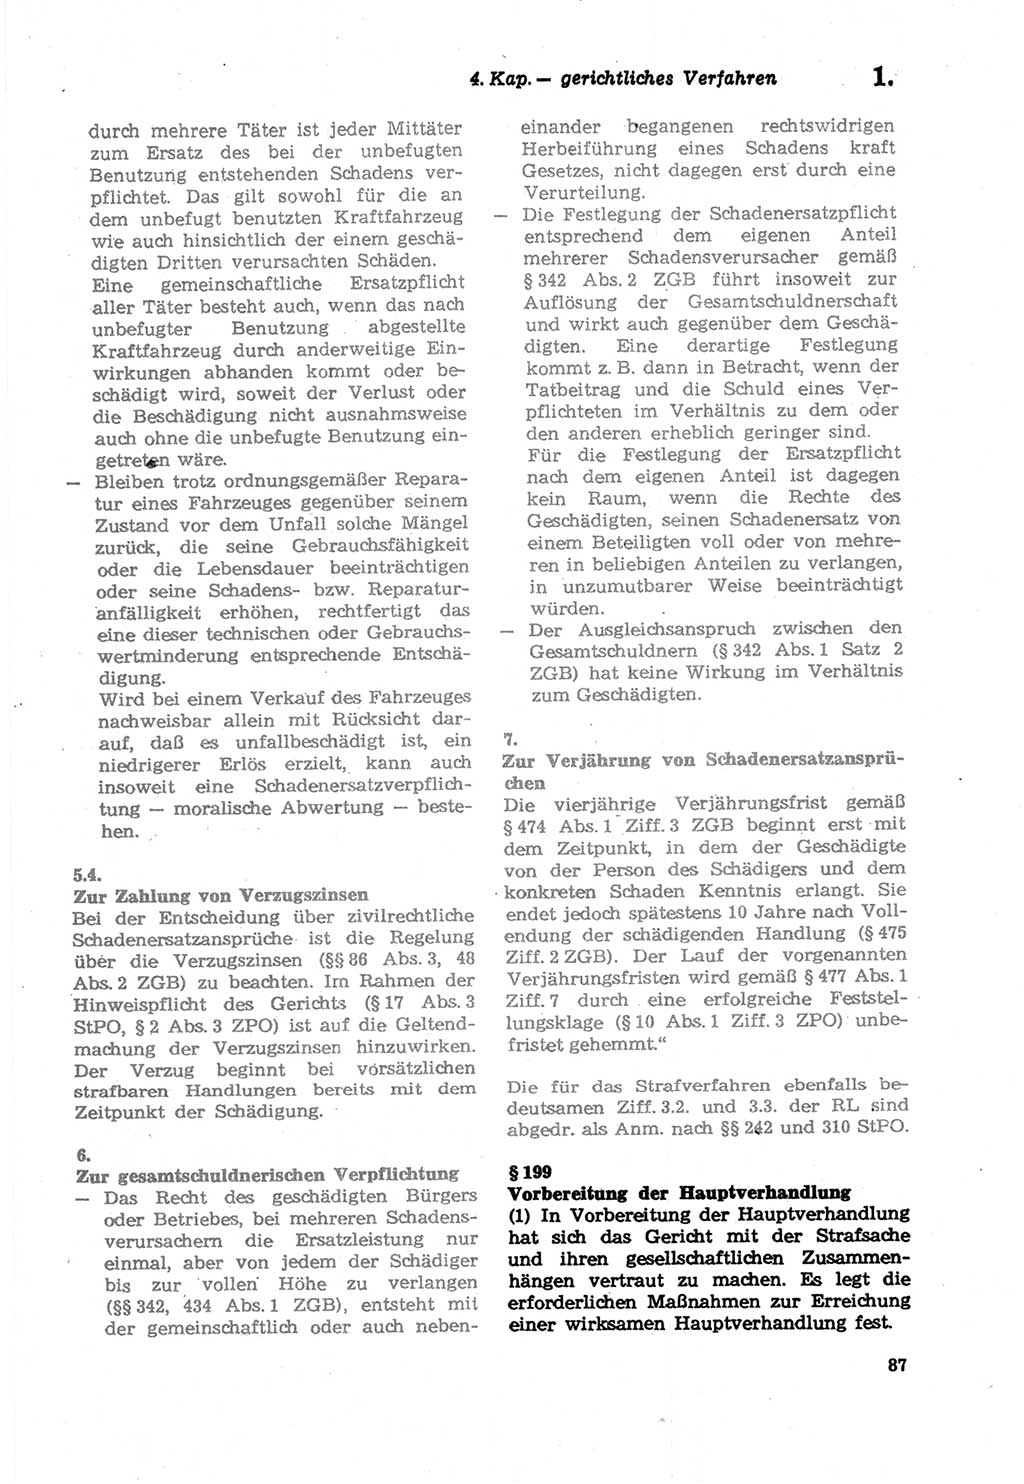 Strafprozeßordnung (StPO) der Deutschen Demokratischen Republik (DDR) sowie angrenzende Gesetze und Bestimmungen 1979, Seite 87 (StPO DDR Ges. Best. 1979, S. 87)